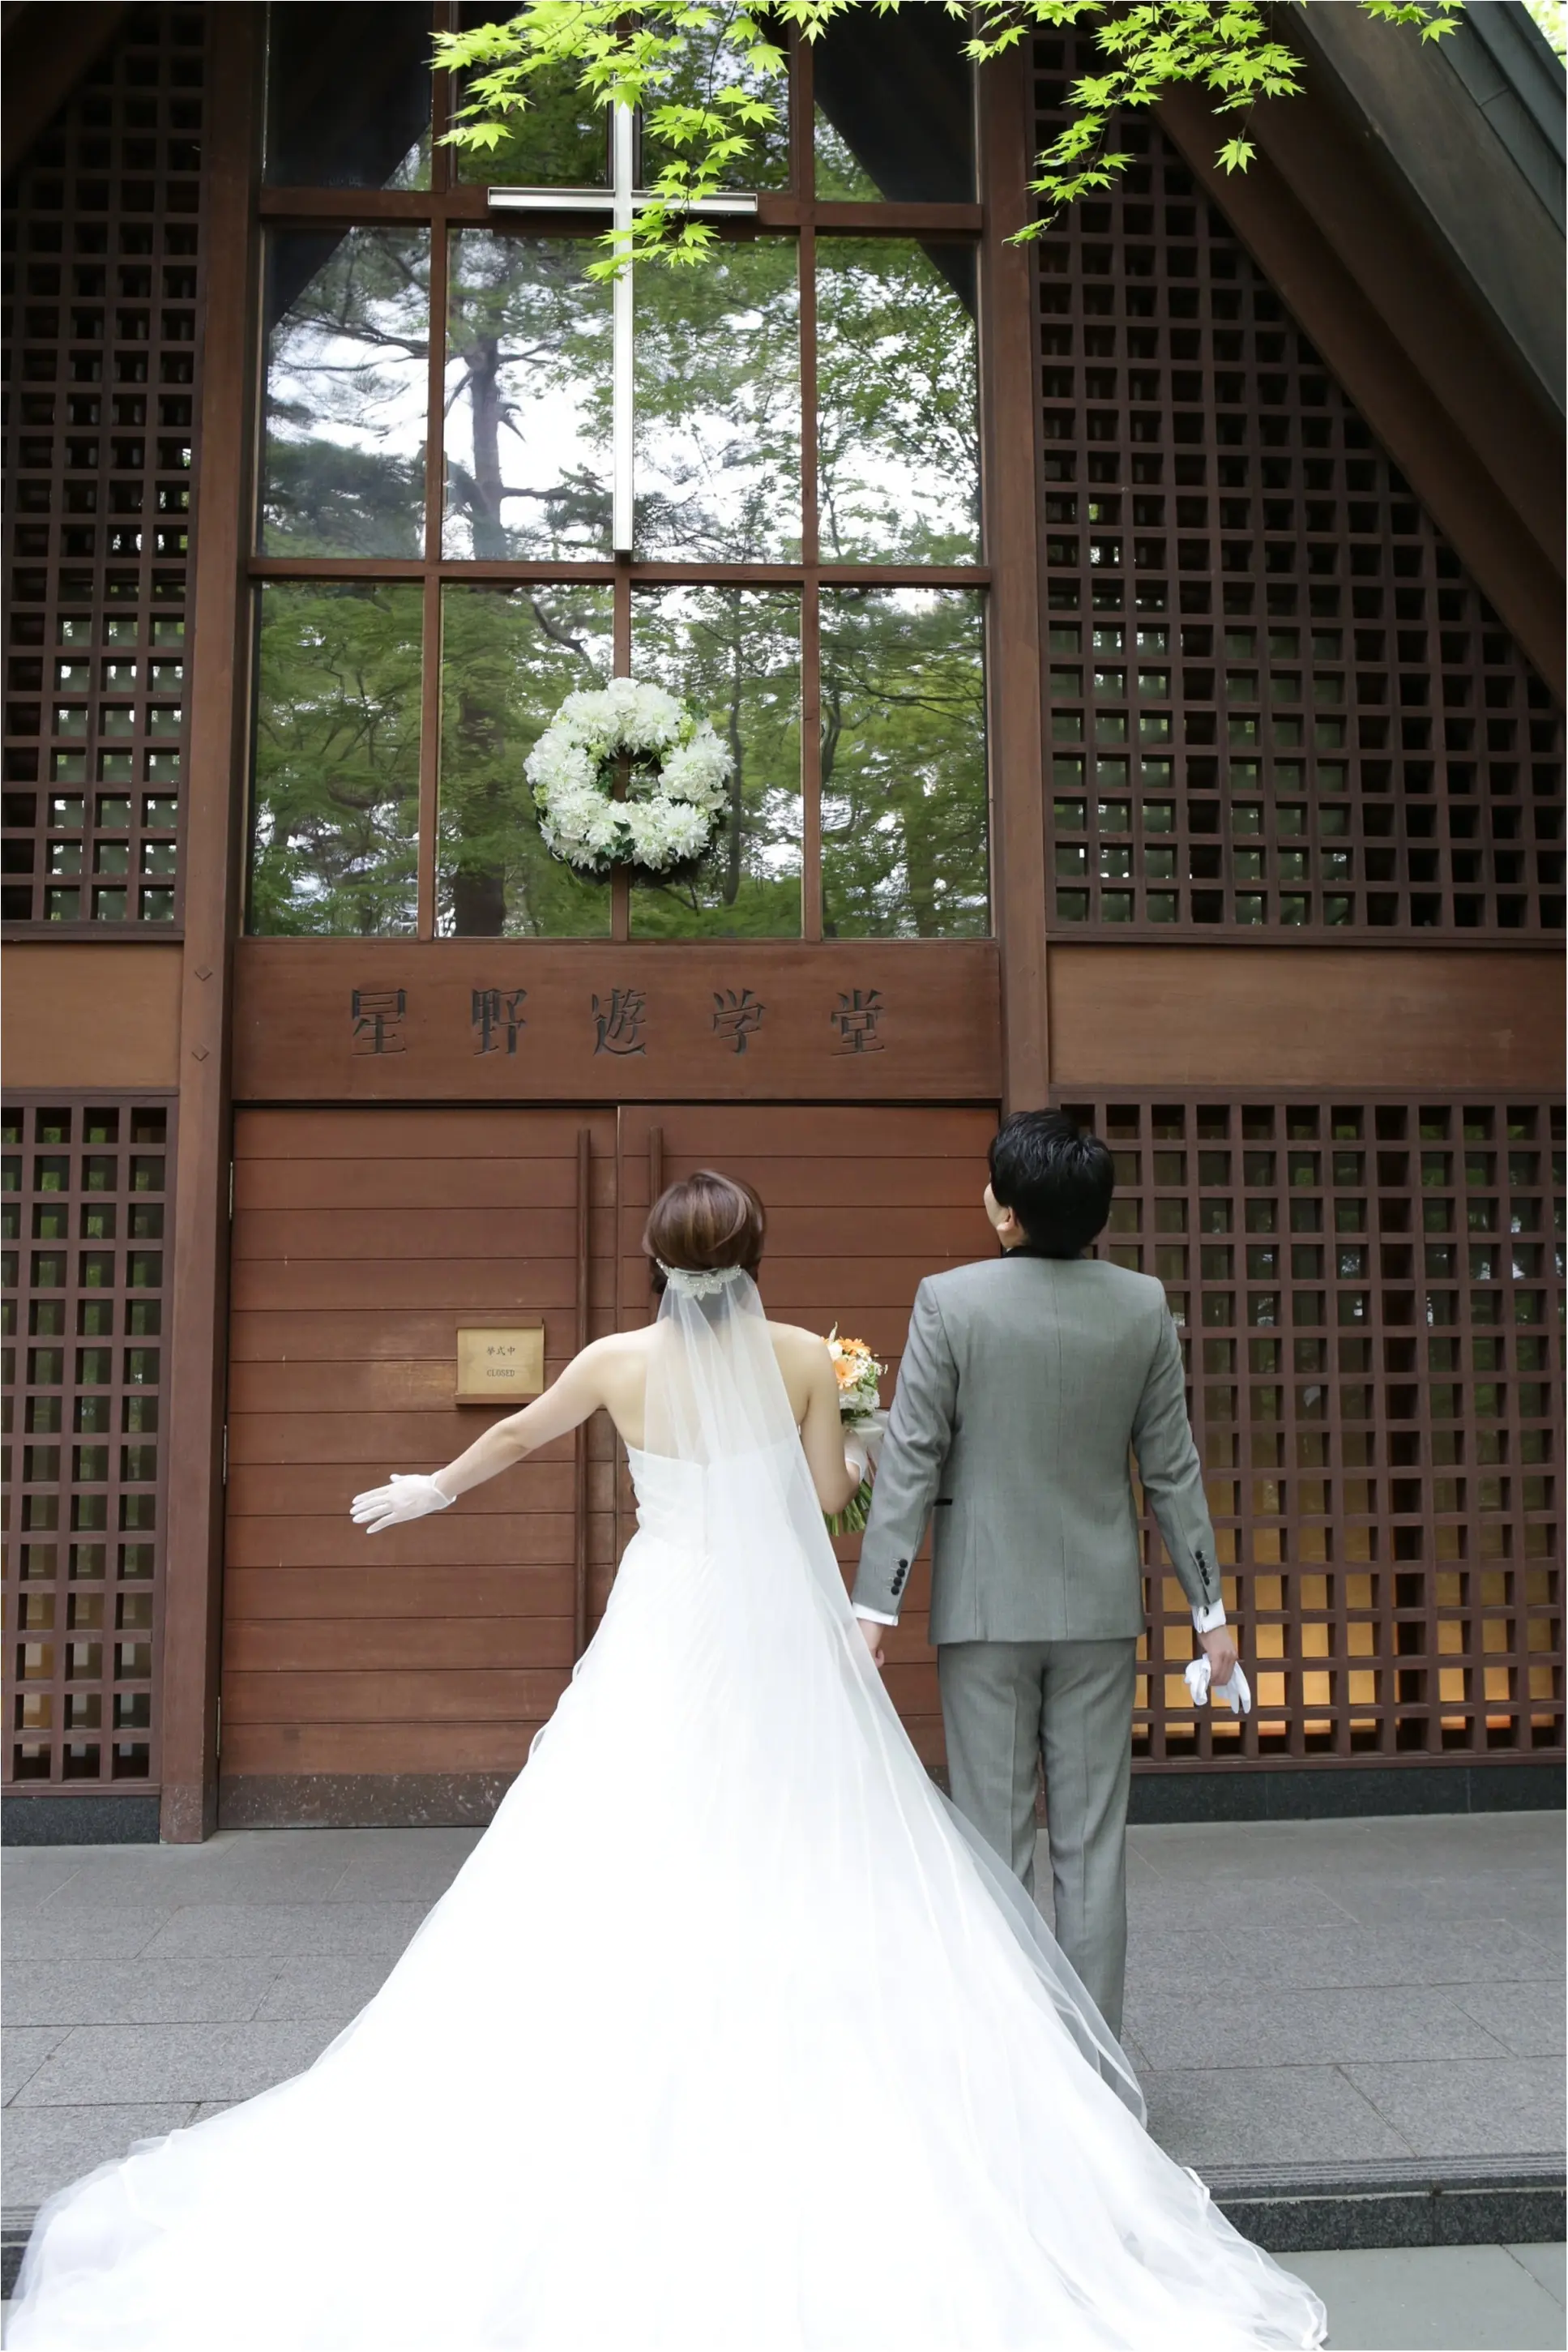 【ベストコレクション】 軽井沢 結婚式 ブログ 427334軽井沢 音羽の森 結婚式 ブログ